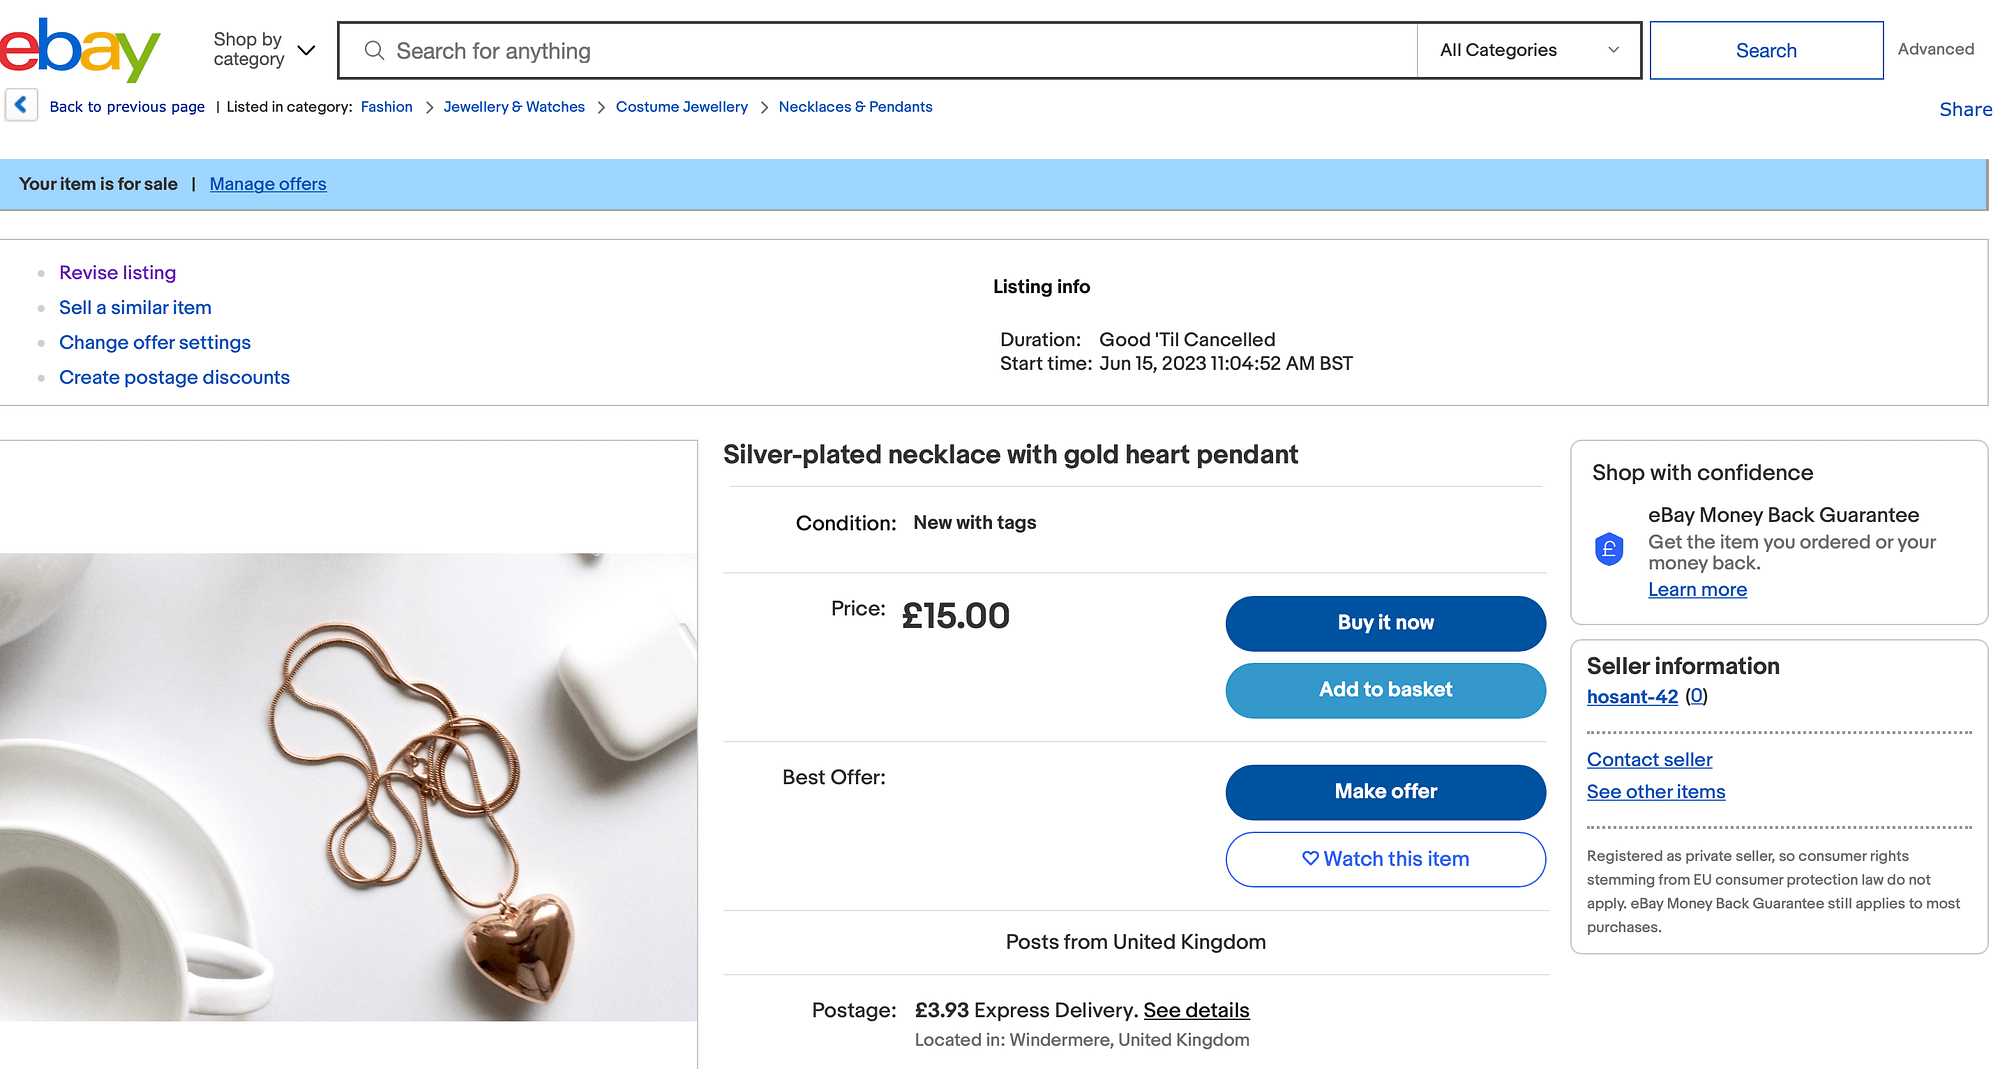 Пример объявления eBay ожерелья за 15 фунтов.